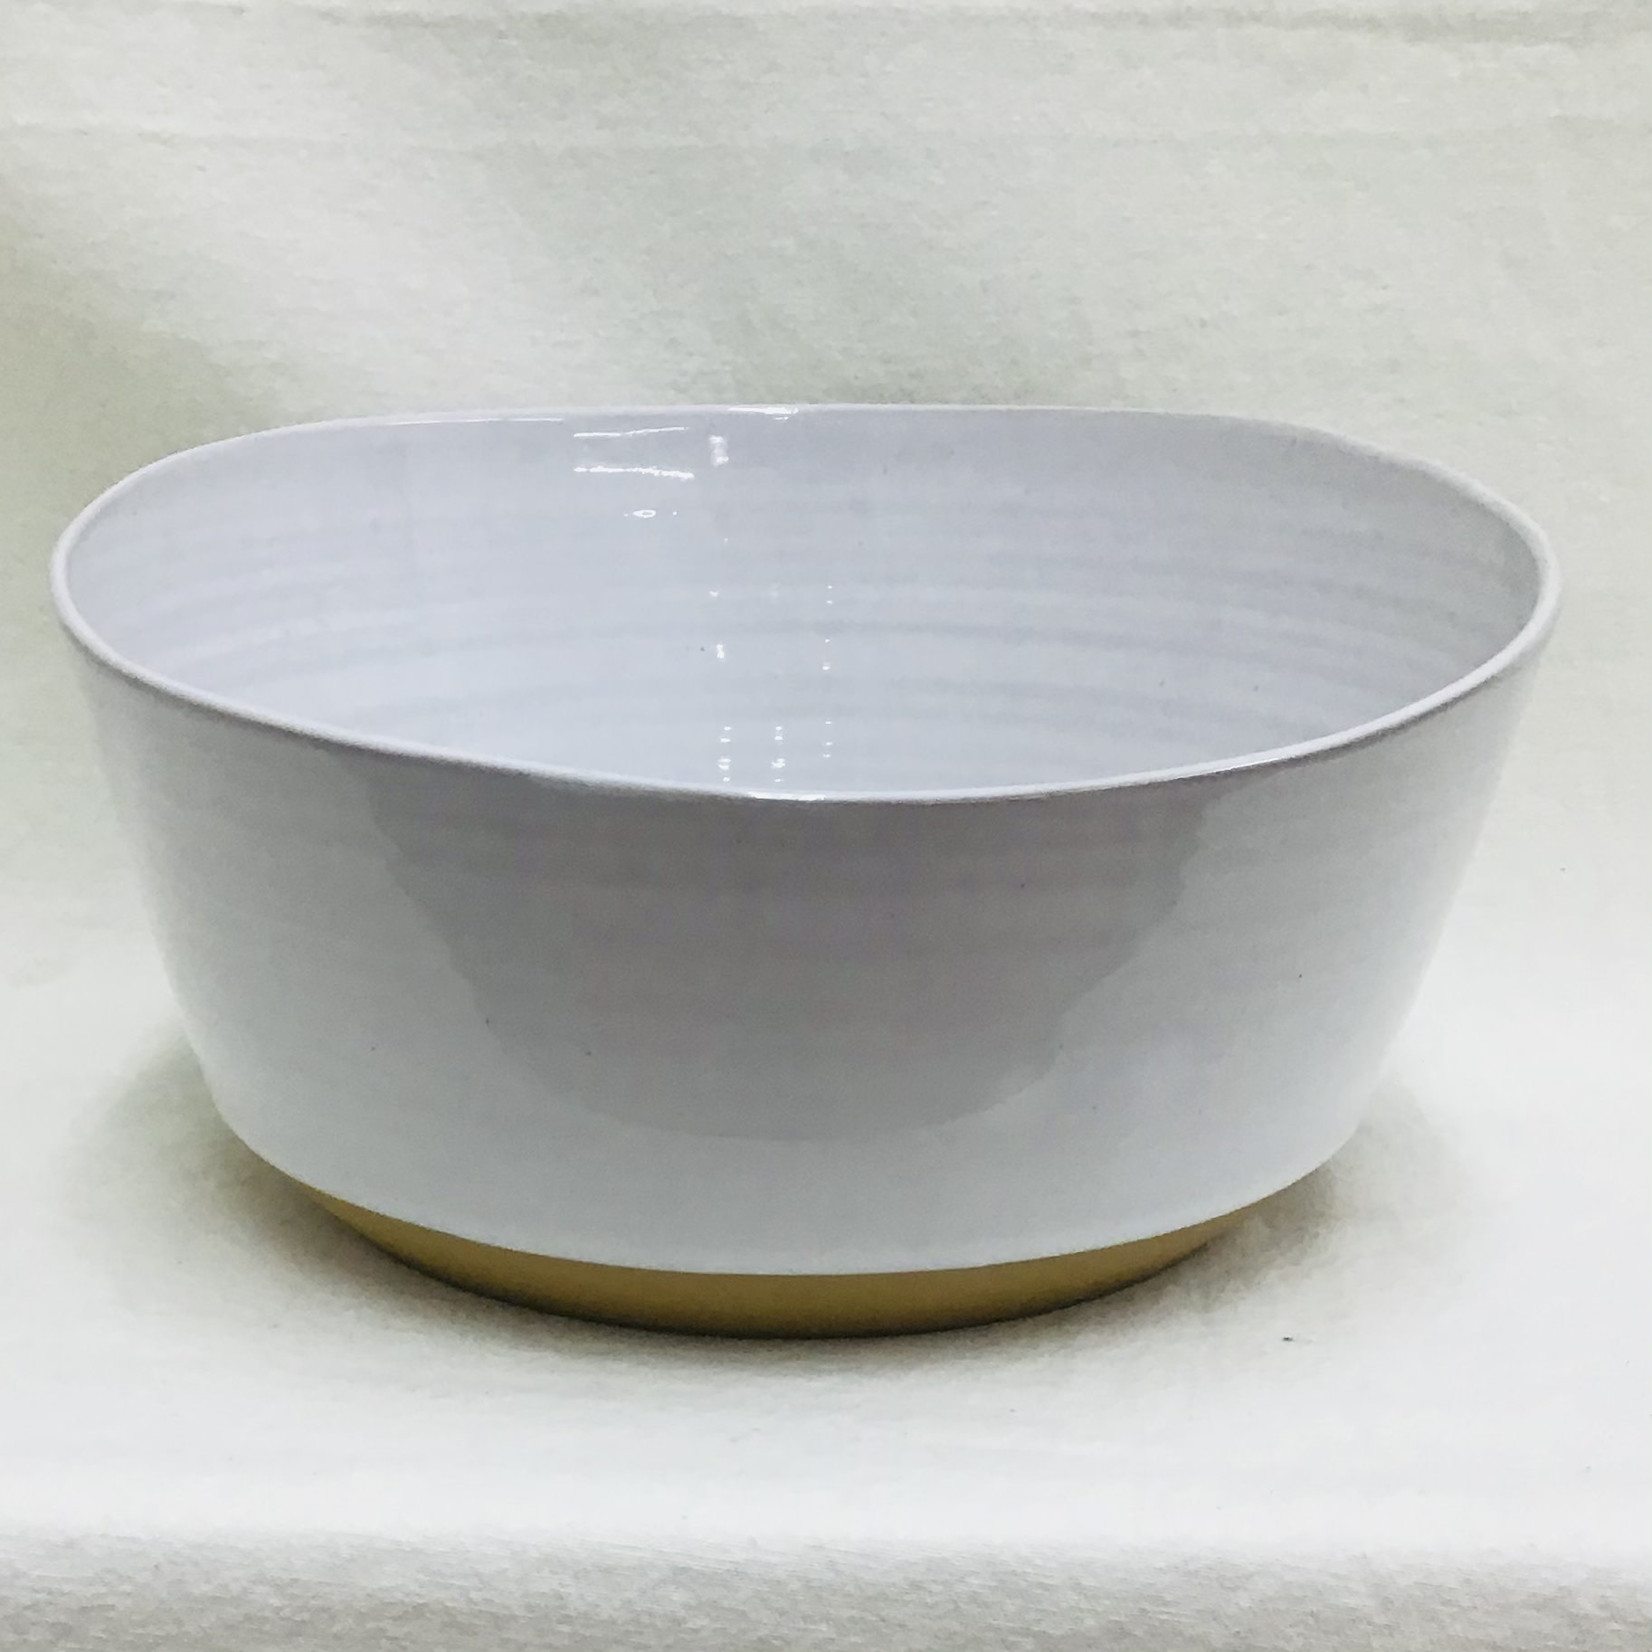 Ten Thousand Villages White Ceramic Bowl Large